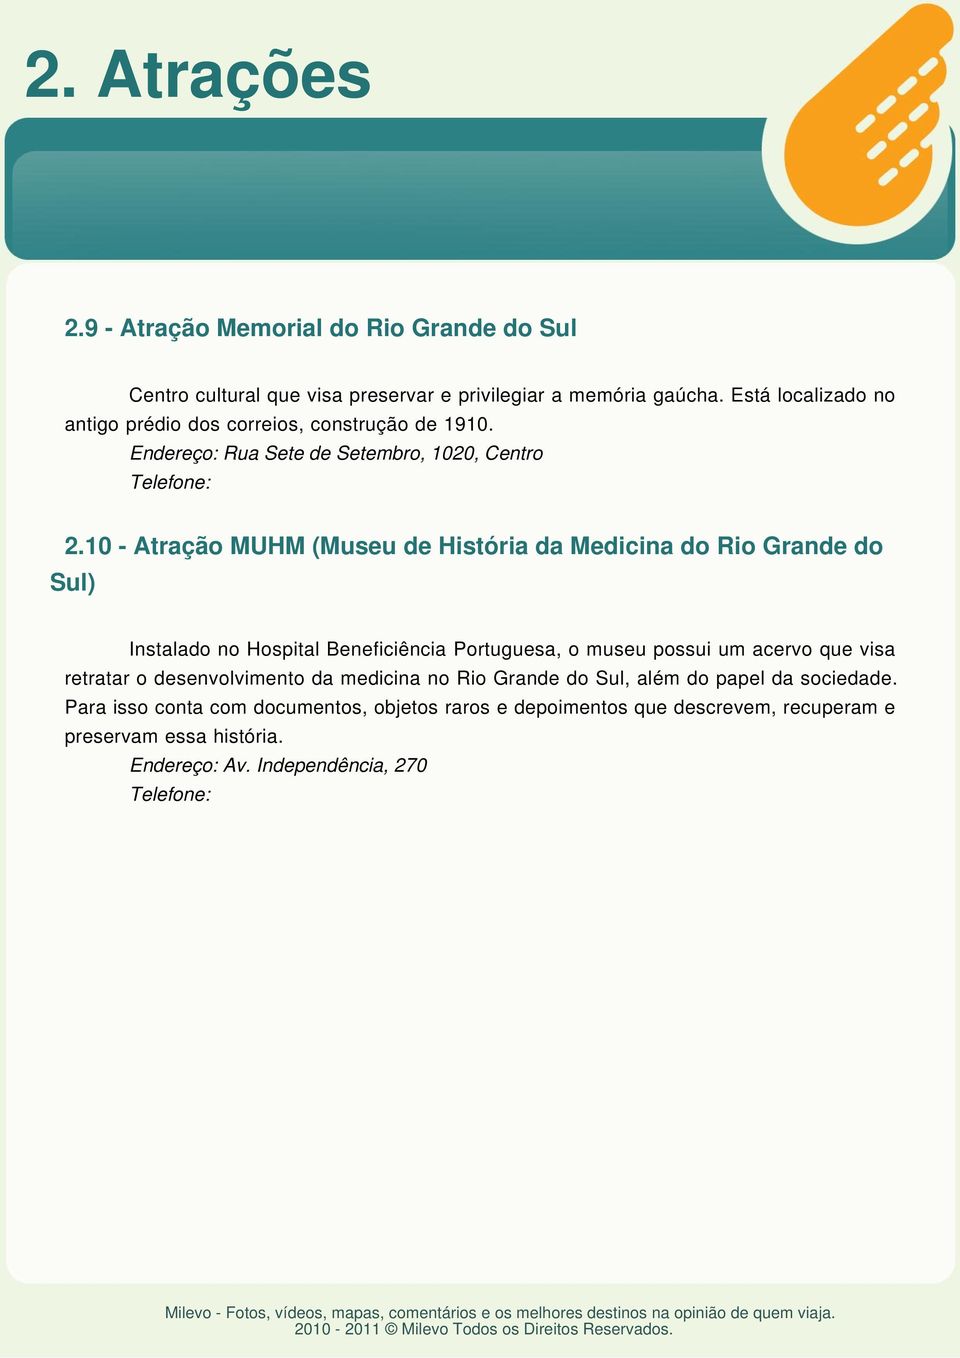 10 - Atração MUHM (Museu de História da Medicina do Rio Grande do Instalado no Hospital Beneficiência Portuguesa, o museu possui um acervo que visa